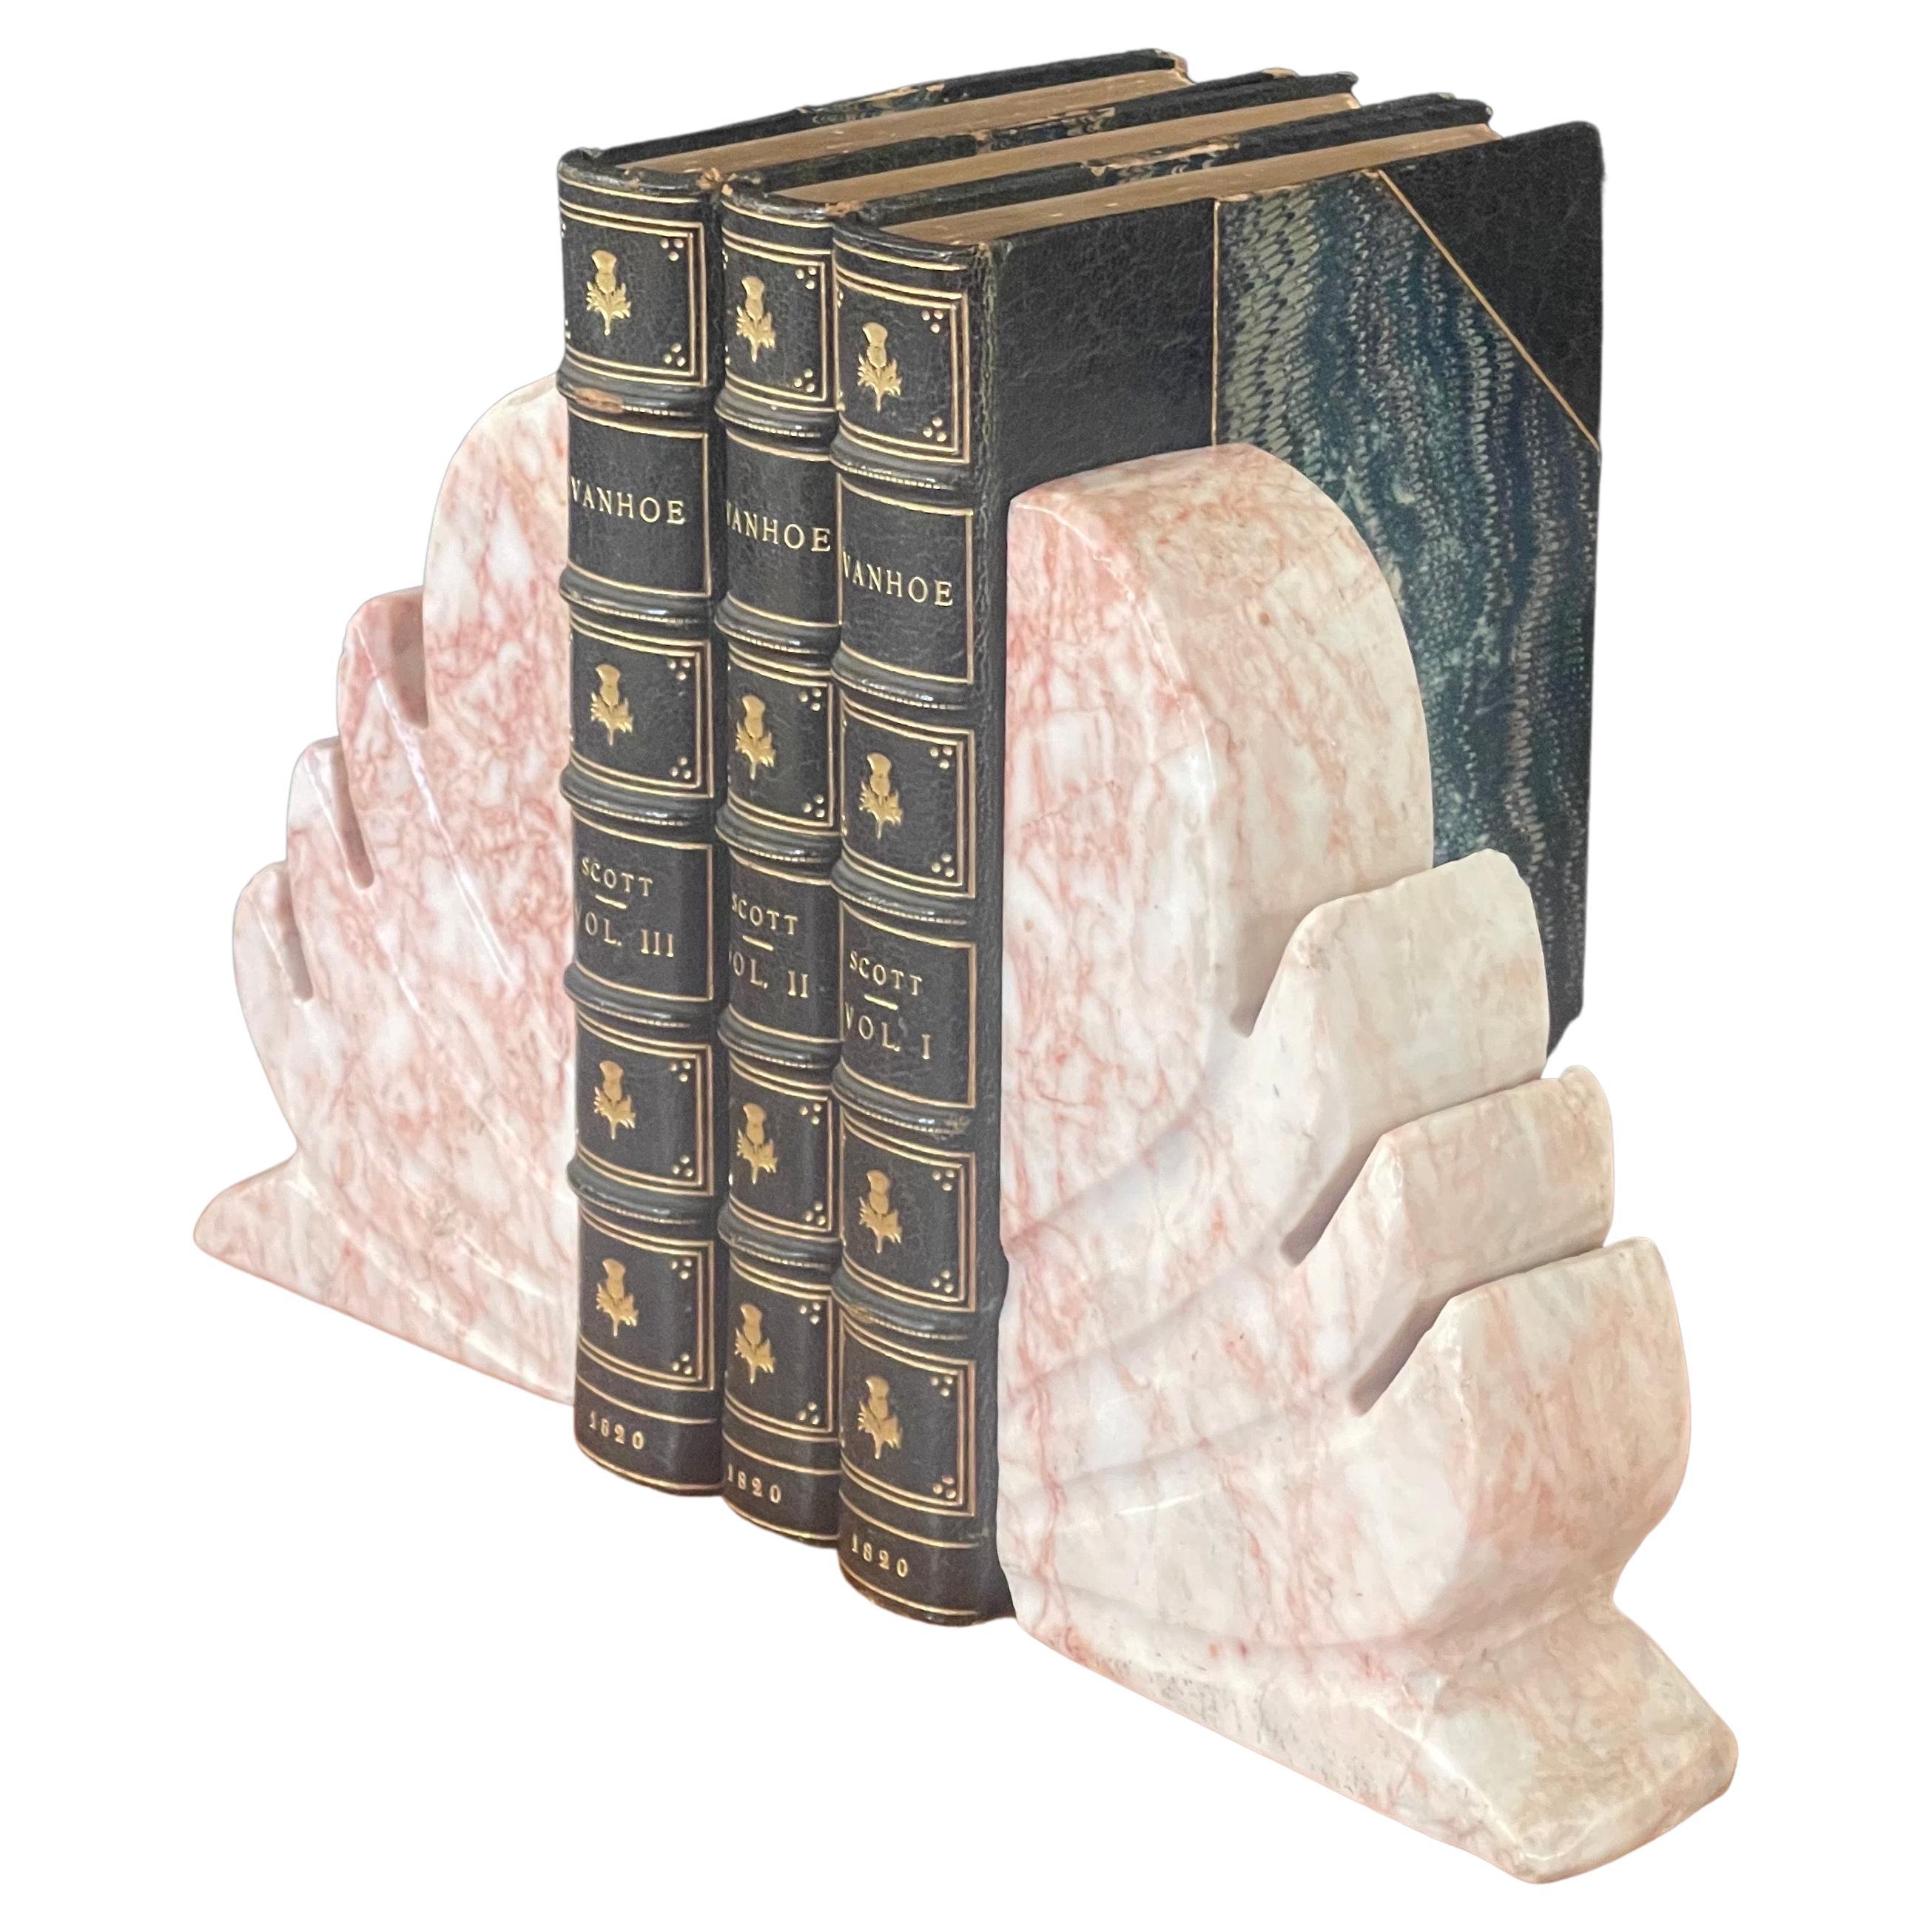 Paire de serre-livres en marbre de style fleur de lis, vers les années 1940. Les serre-livres sont lourds, solides et bien fabriqués. Ils mesurent 8 